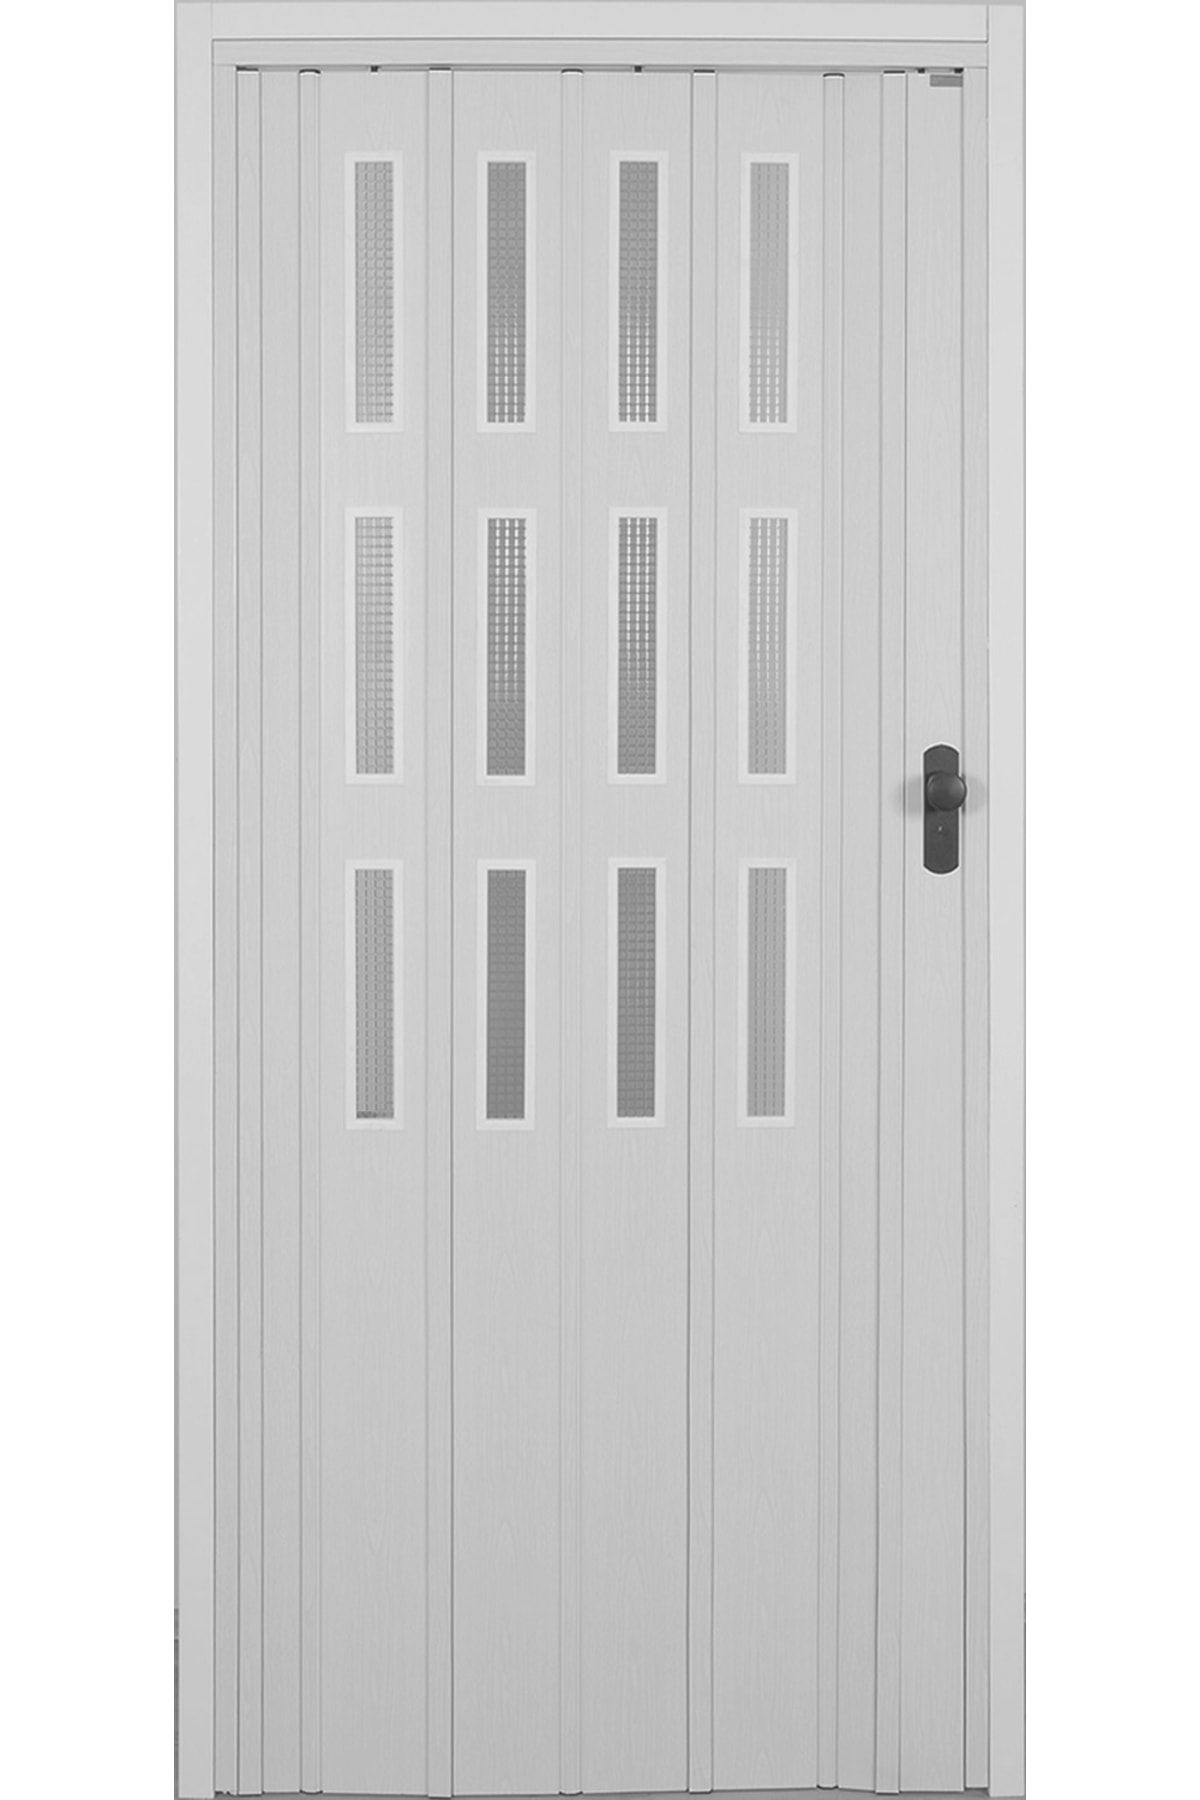 DEKORAKS 3 Sıra Camlı Akordeon Kapı, Beyaz Düz Renkli, 87x215 cm